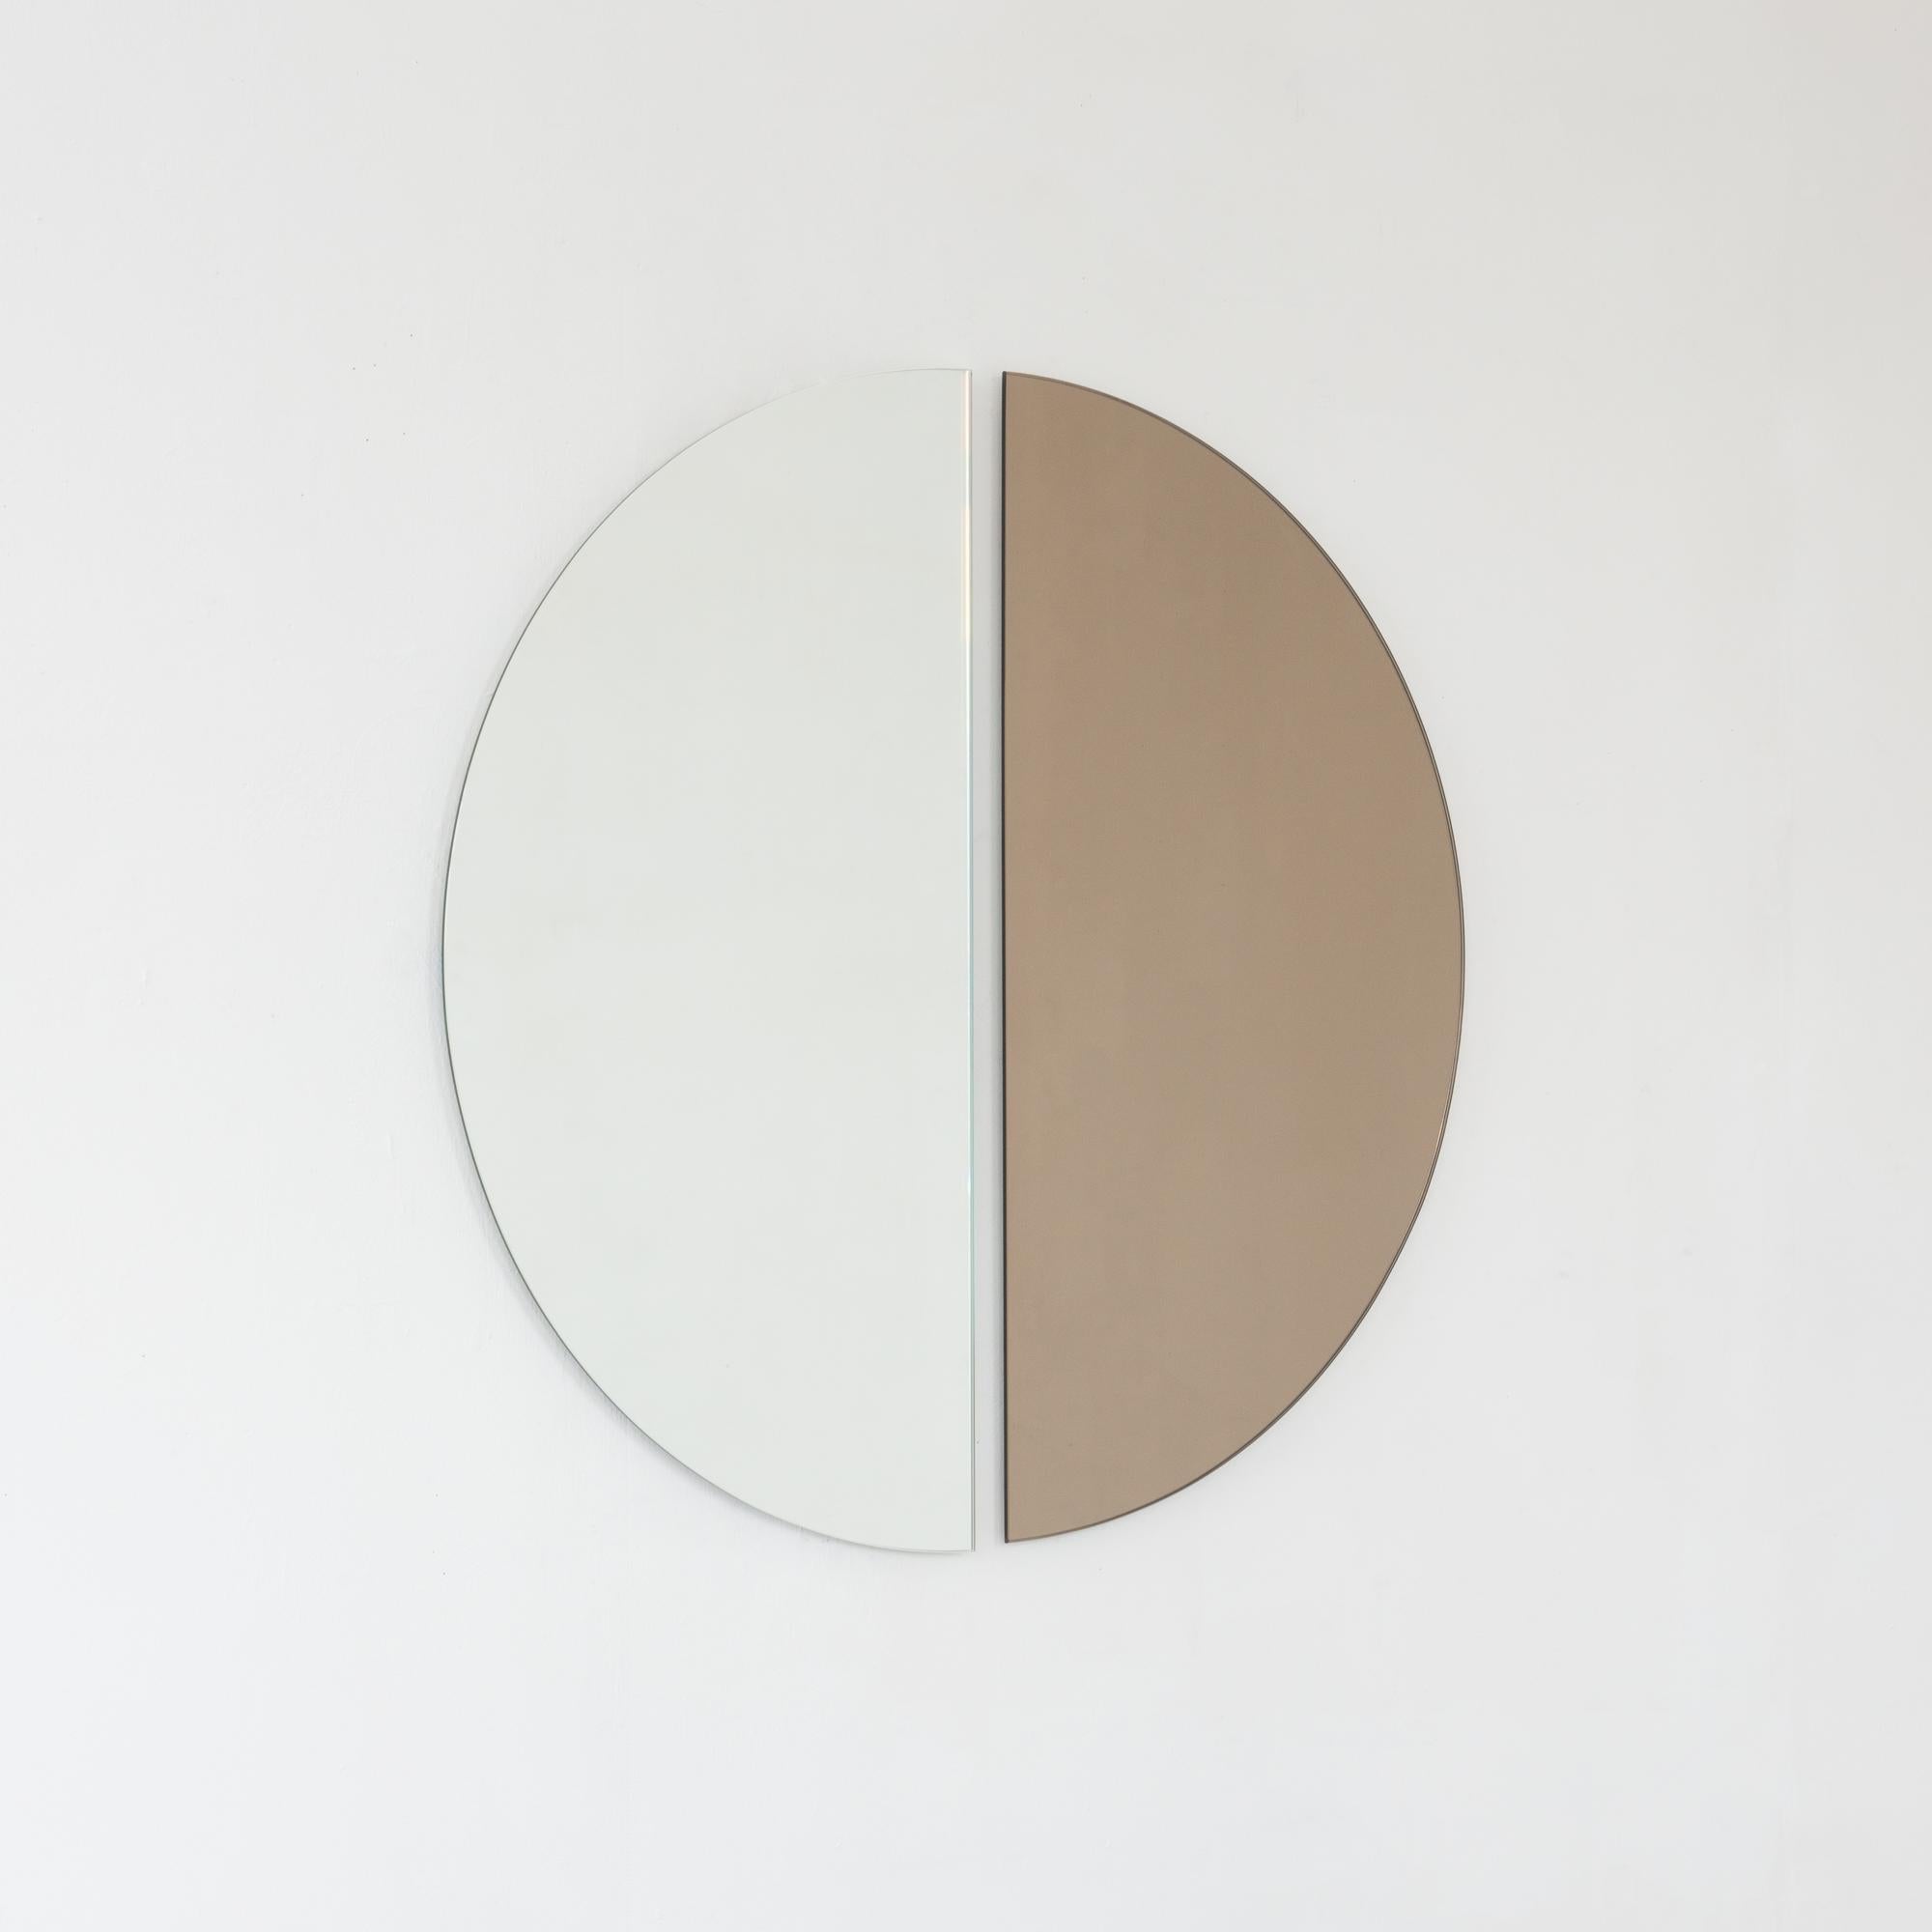 Set aus zwei minimalistischen halbmondförmigen Luna™ Standard-Spiegeln in Silber und Bronze mit Schwebeeffekt. Ausgestattet mit einem hochwertigen und ausgeklügelten Aufhängesystem für eine flexible Installation in 4 verschiedenen Richtungen.